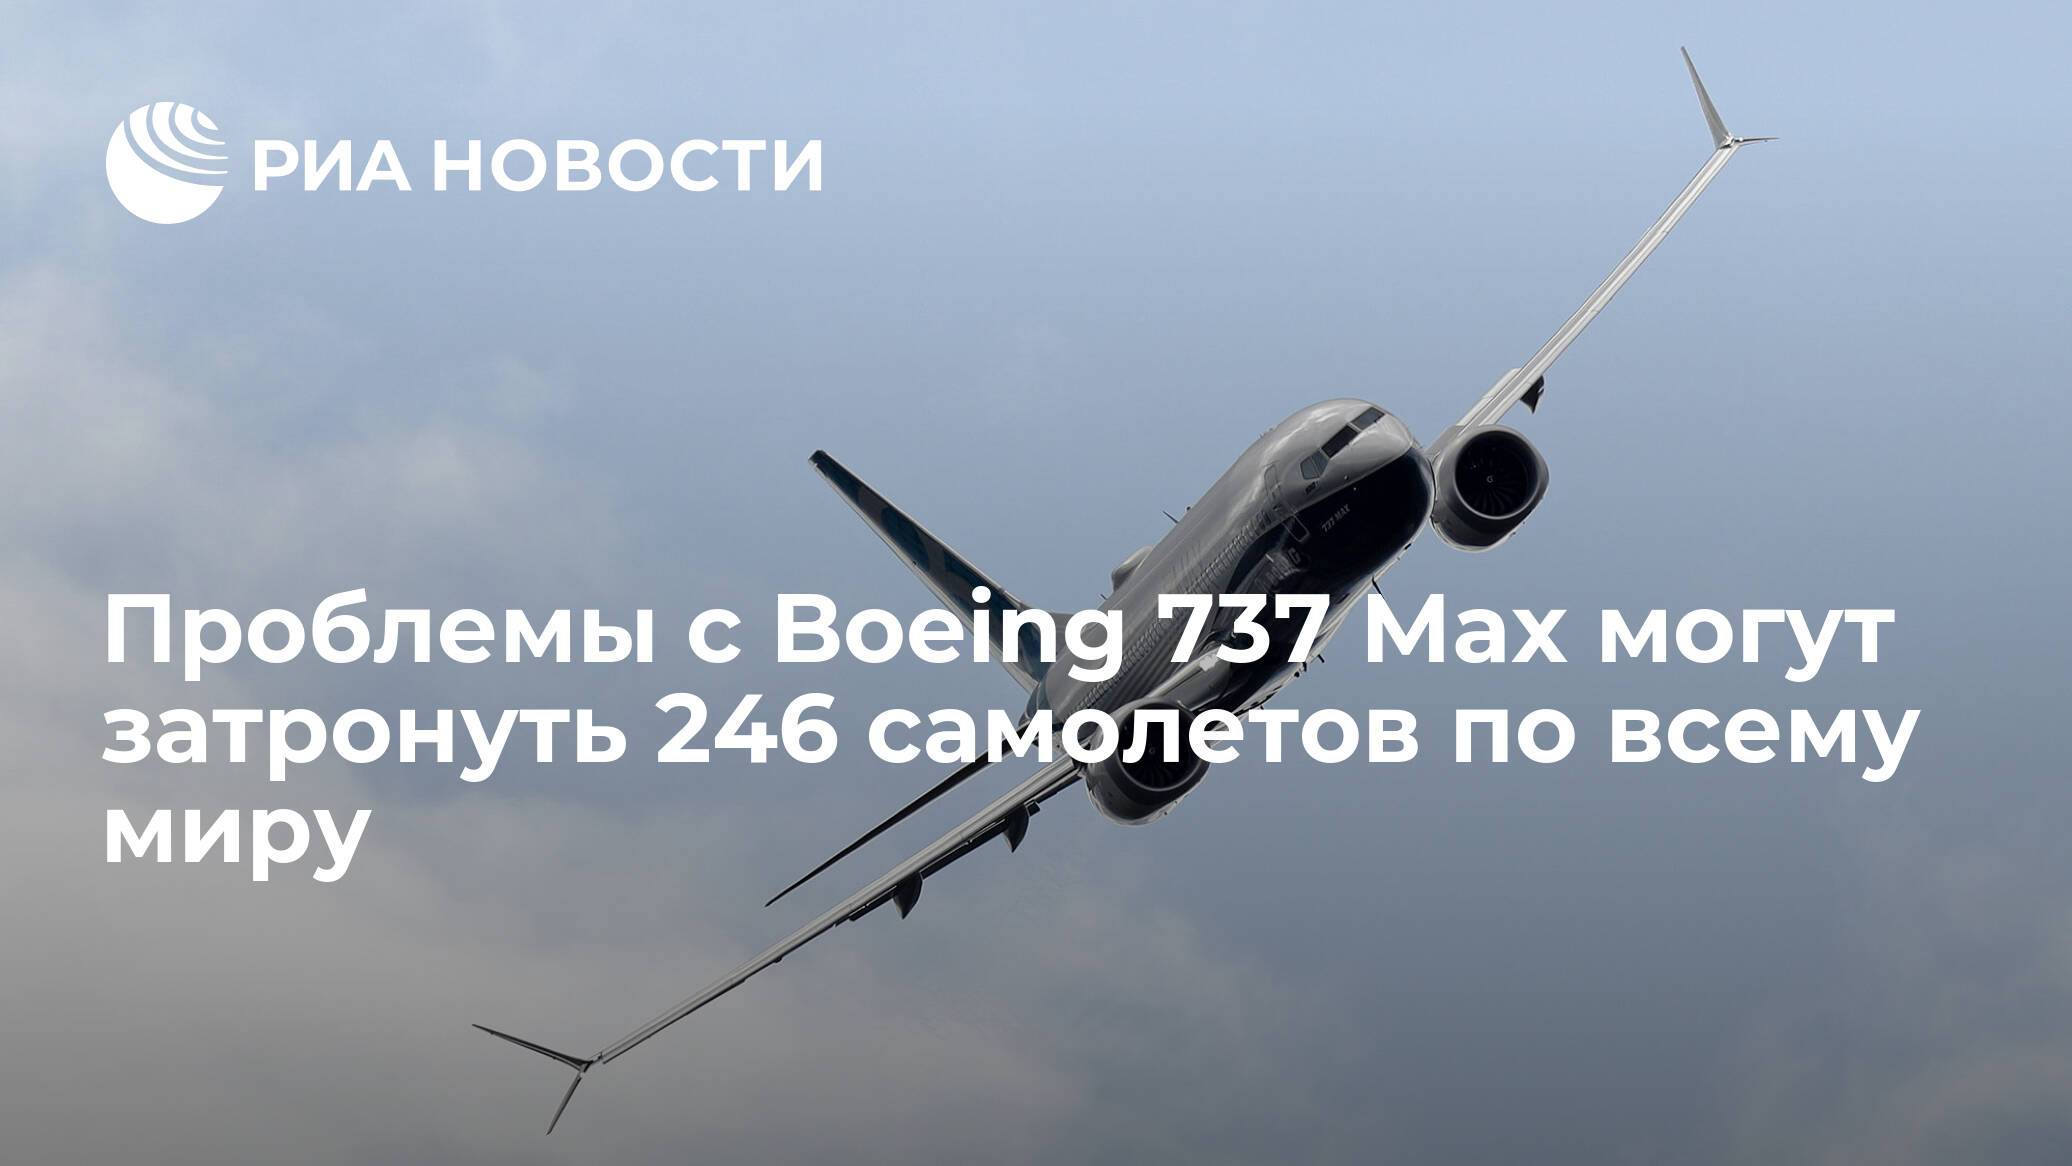 Кто в россии эксплуатирует боинг 737 max 8 сообщили в росавиации, 2 самолета этой модели использует компания s7 airlines